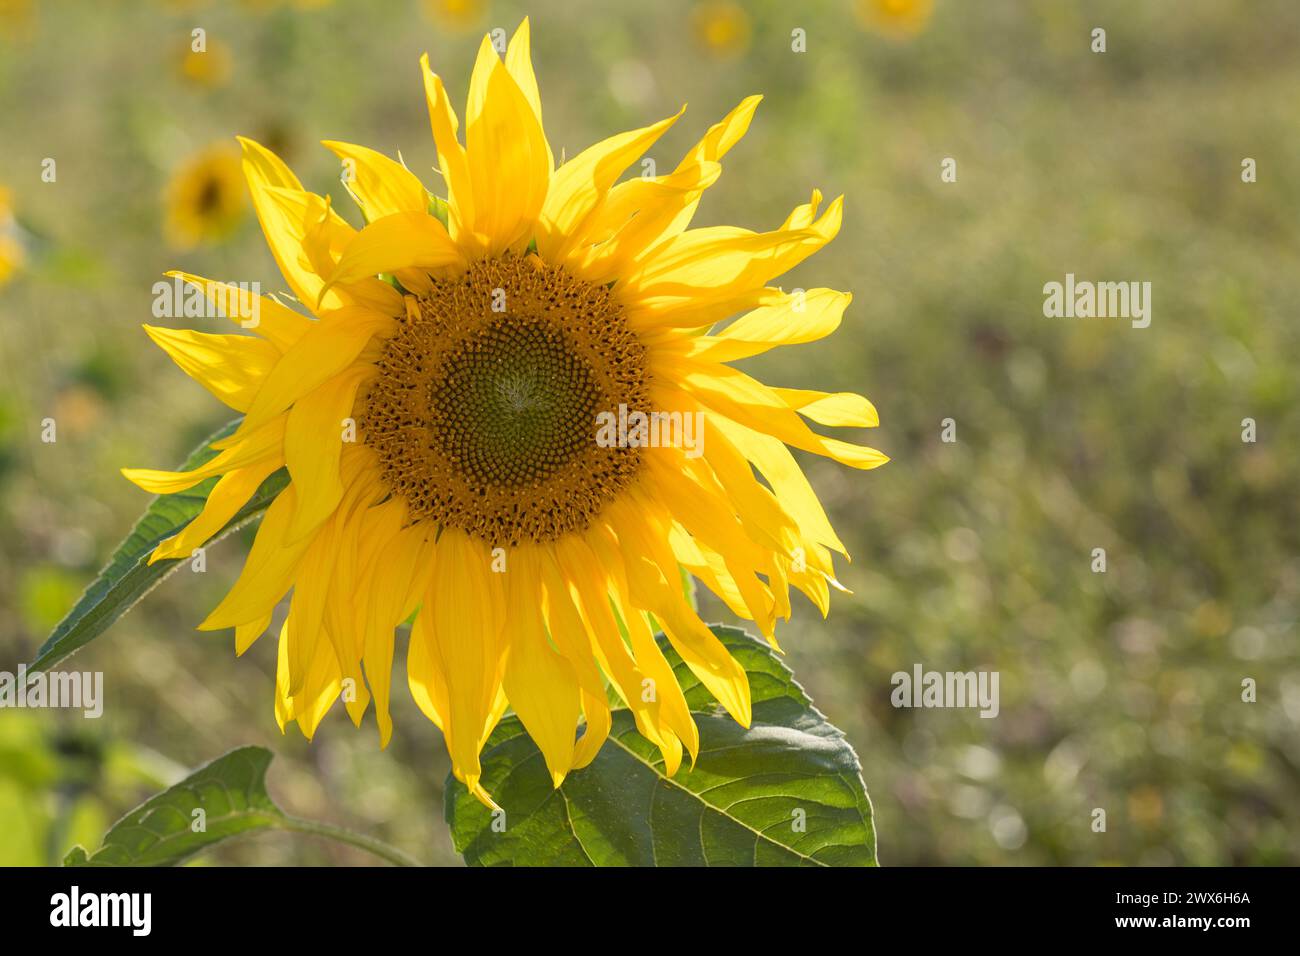 Sonnenblume, Gewöhnliche Sonnenblume, Sonnenblumen, Helianthus annuus, tournesol, tournesol commun, le tournesol, hélianthe, soleil Banque D'Images